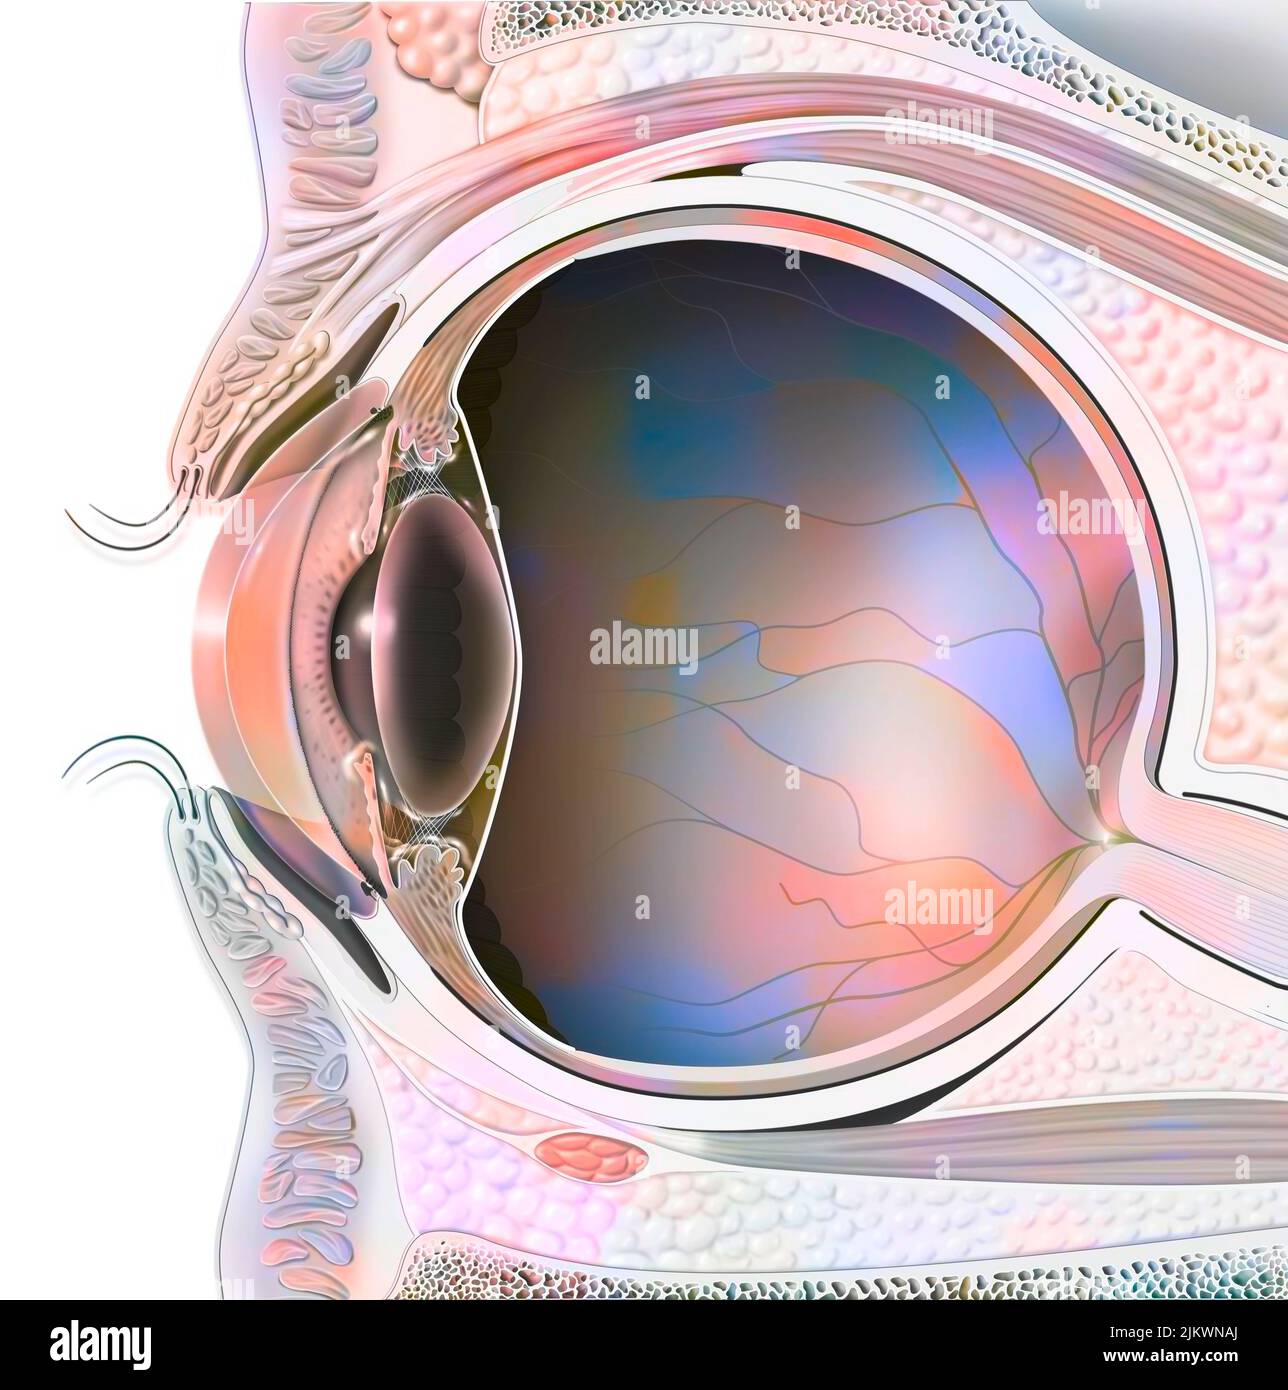 Anatomia di un occhio nella sezione che mostra lente, retina. Foto Stock